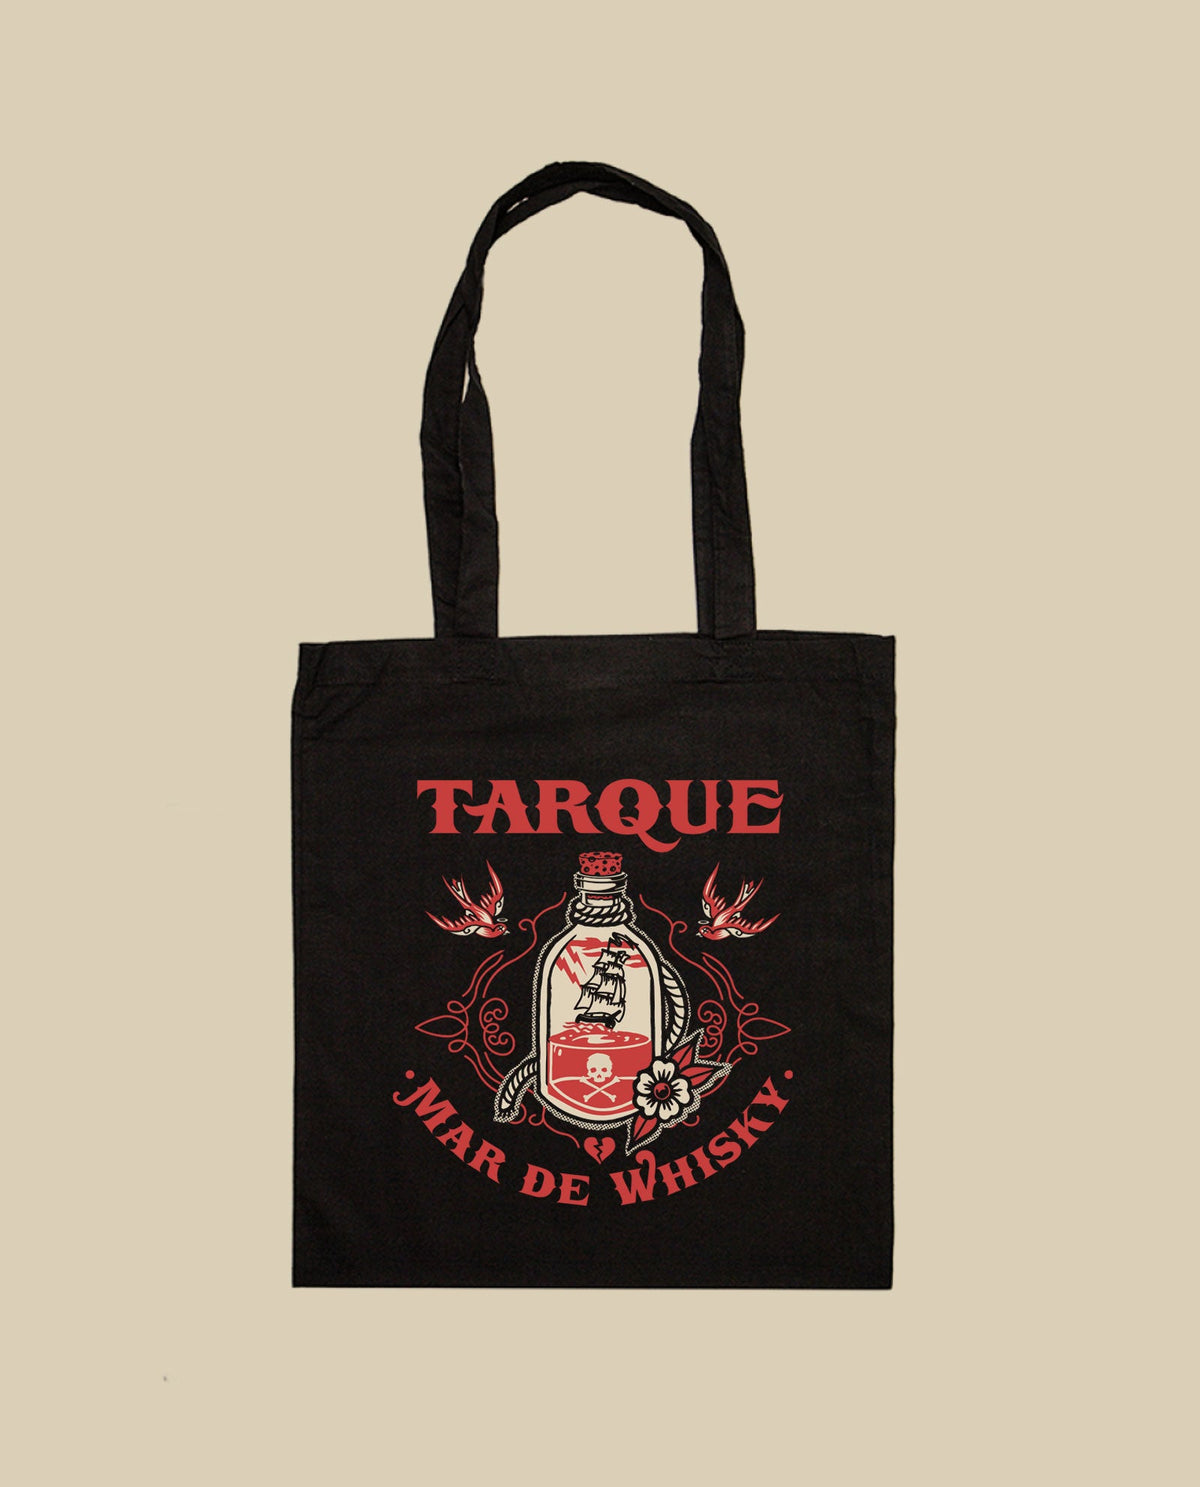 Tarque - Tote bag "Mar de whisky" - D2fy · Rocktud - Tarque